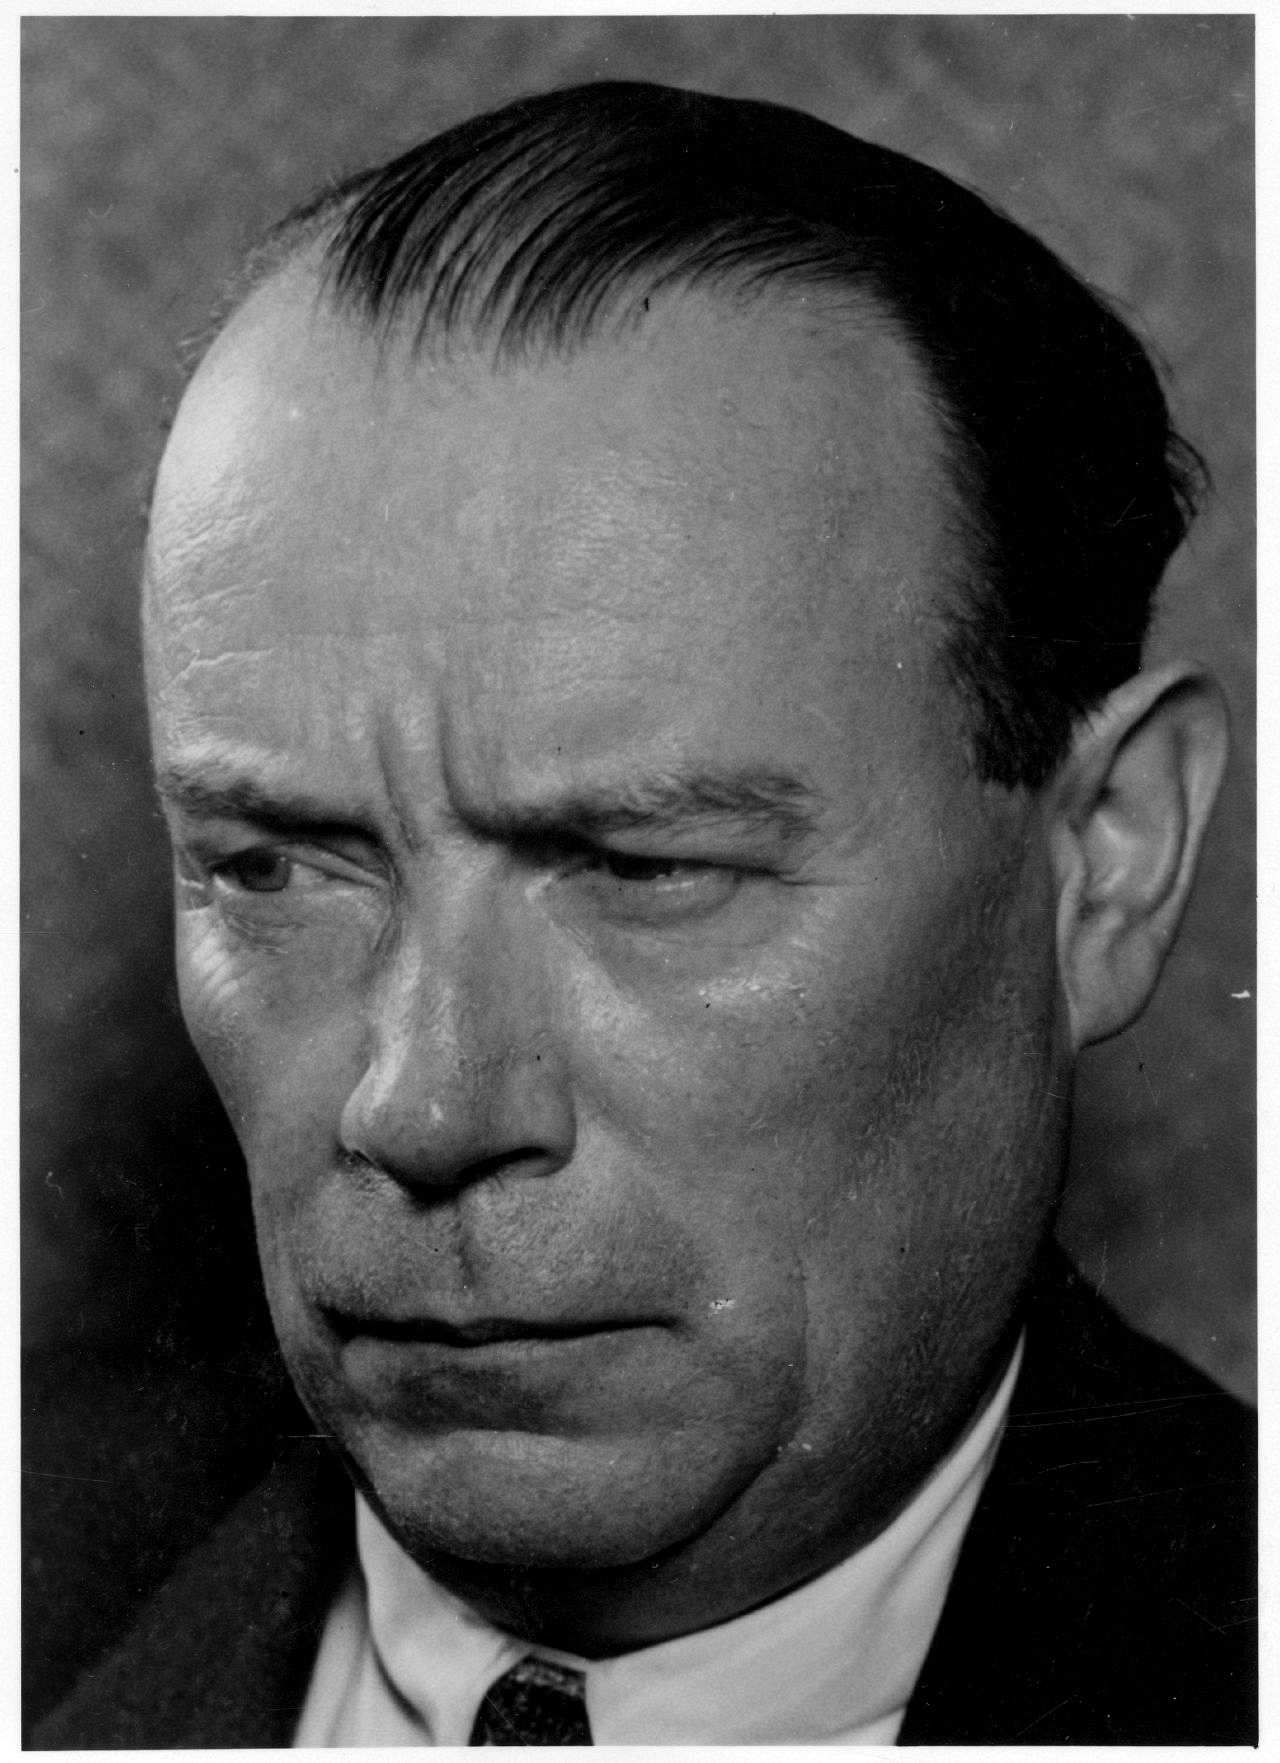 Porträt von Wilhelm Zaisser, Leiter des Ministeriums für Staatssicherheit (1950-1953).